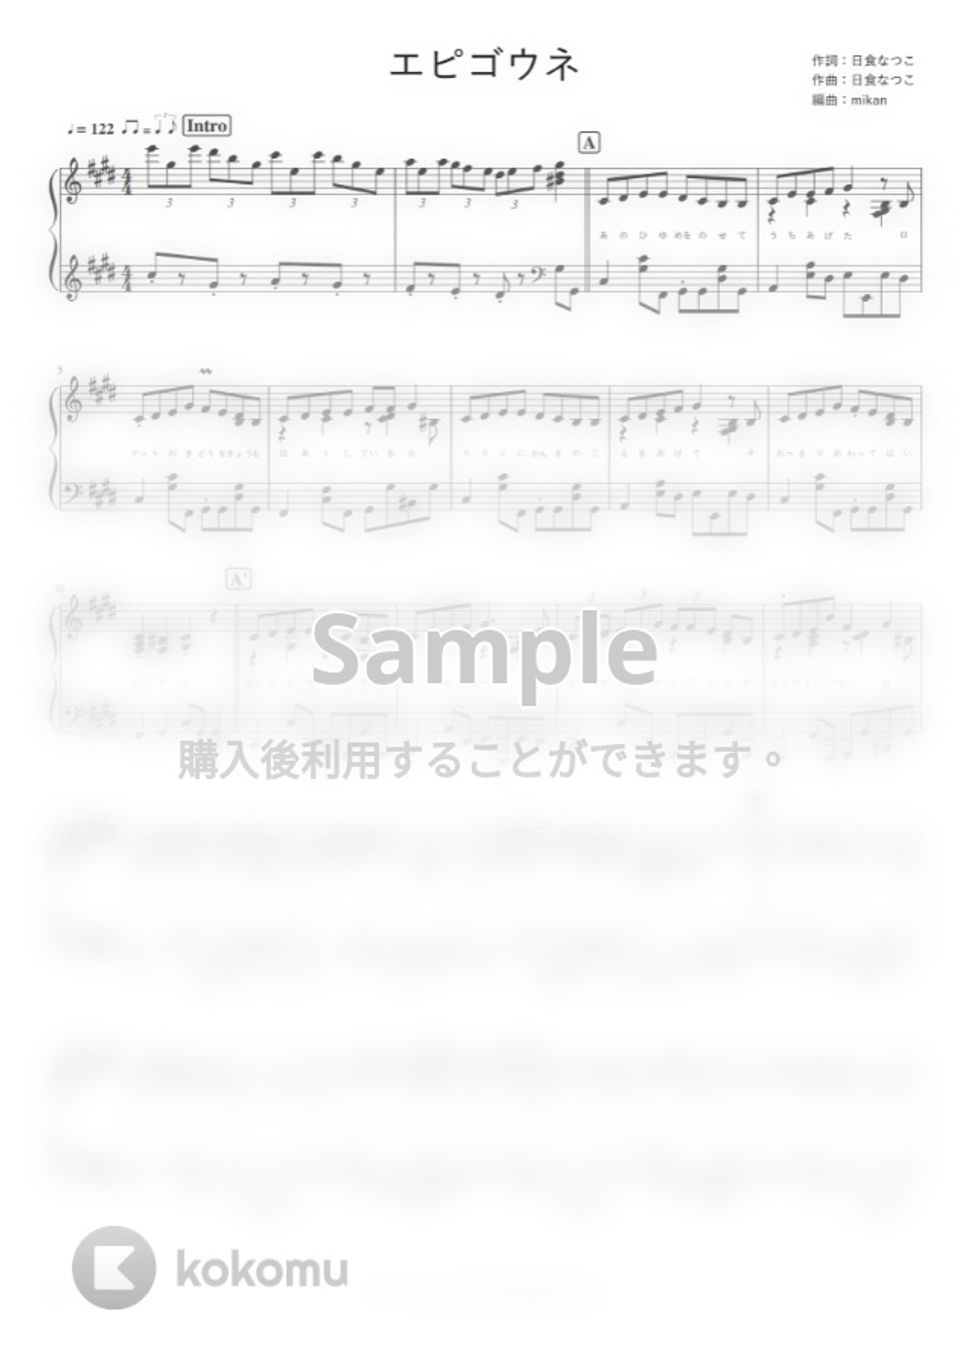 日食なつこ - エピゴウネ by pianomikan